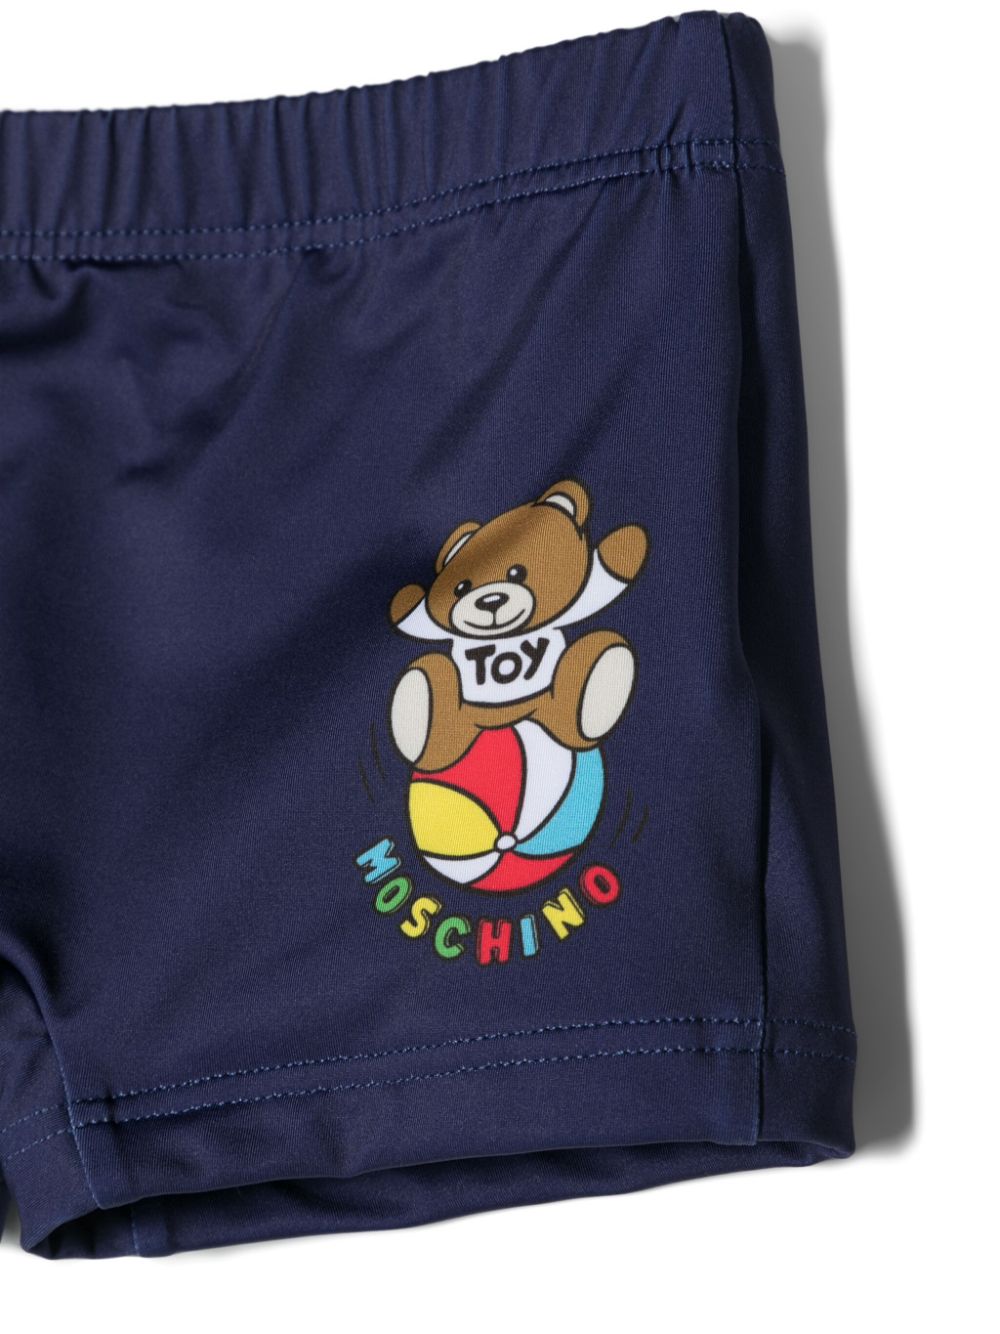 Blue baby swim shorts with logo